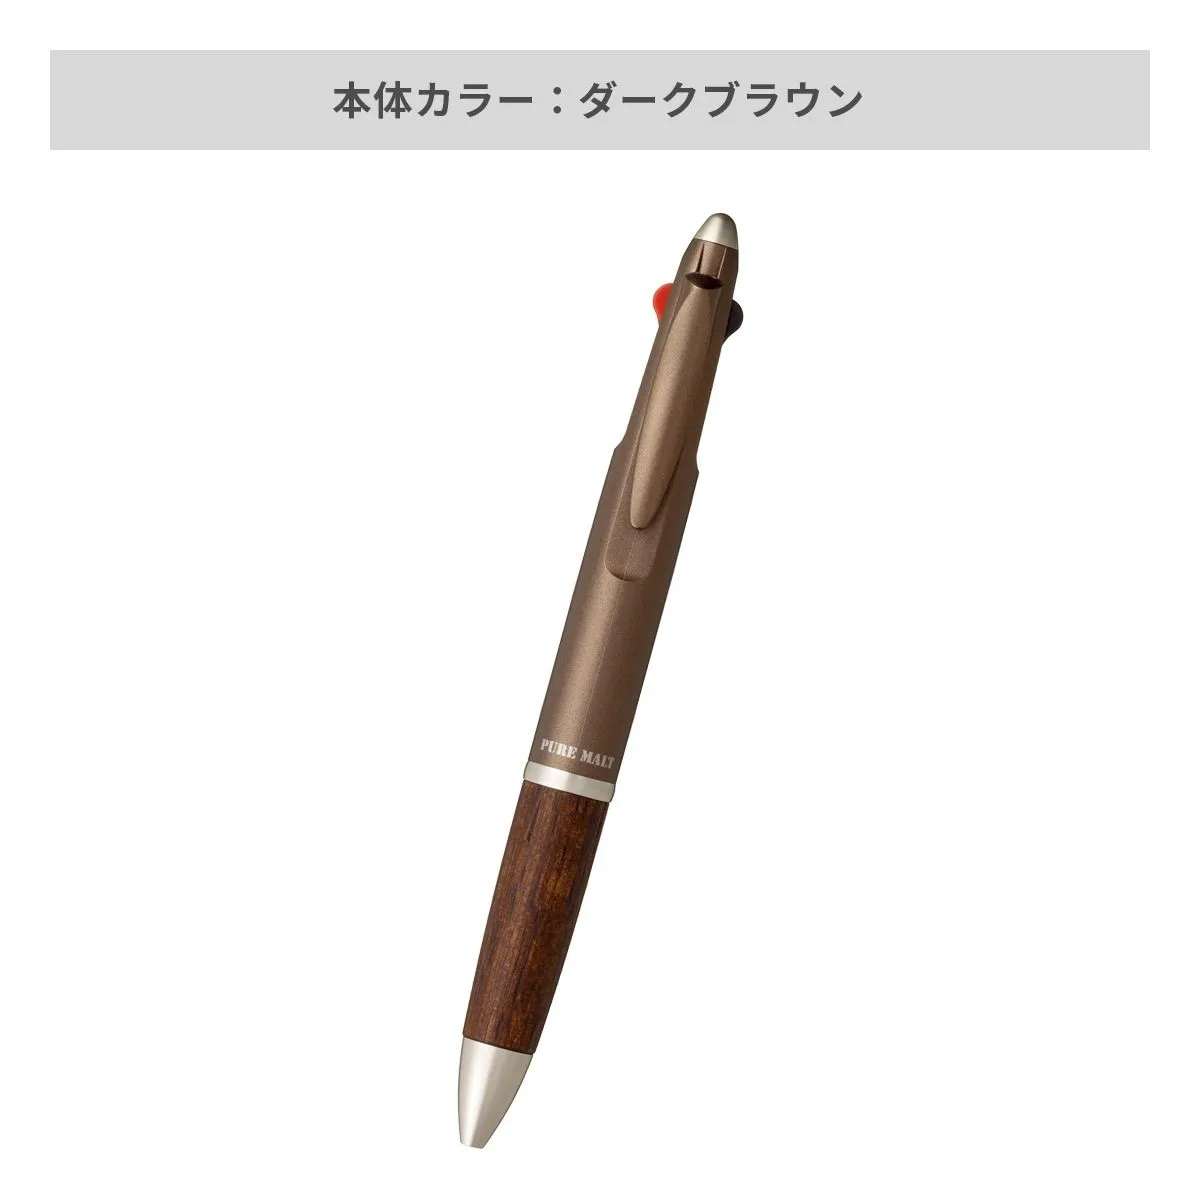 三菱鉛筆 ピュアモルト3機能ペン 0.7mm【多機能ペン / パッド印刷】 画像4